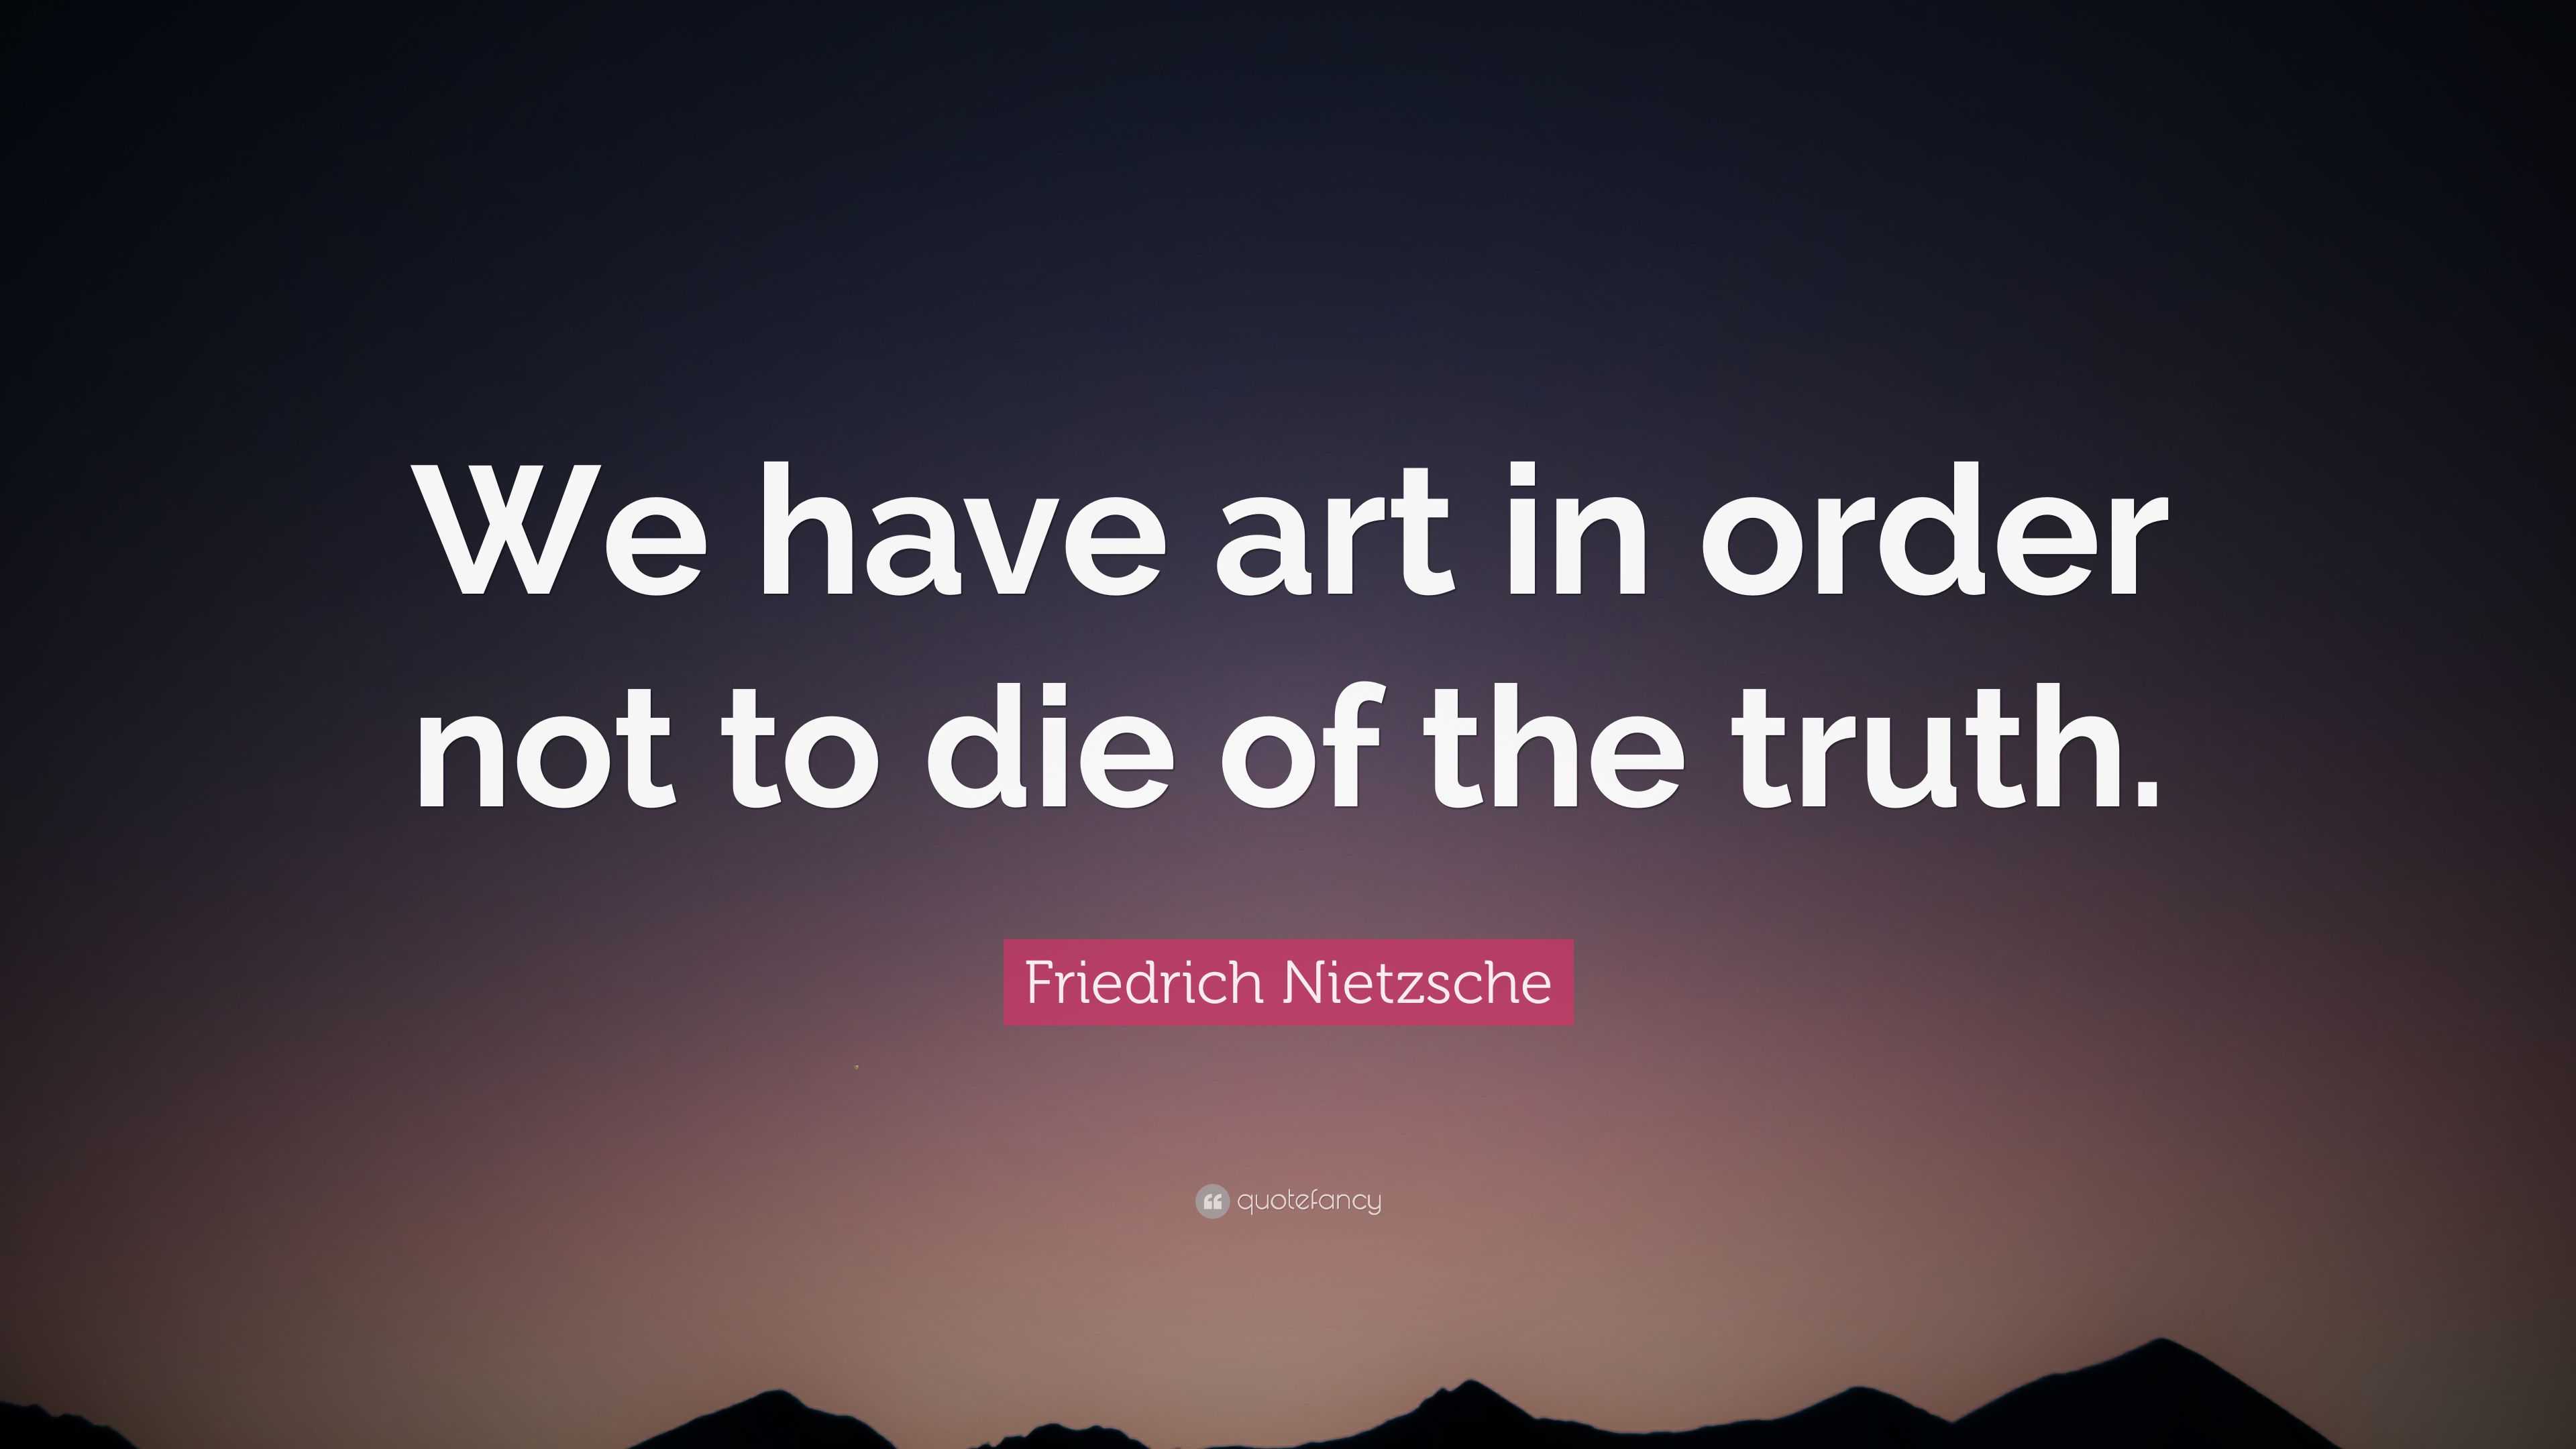 Friedrich Nietzsche Quote: "We have art in order not to ...